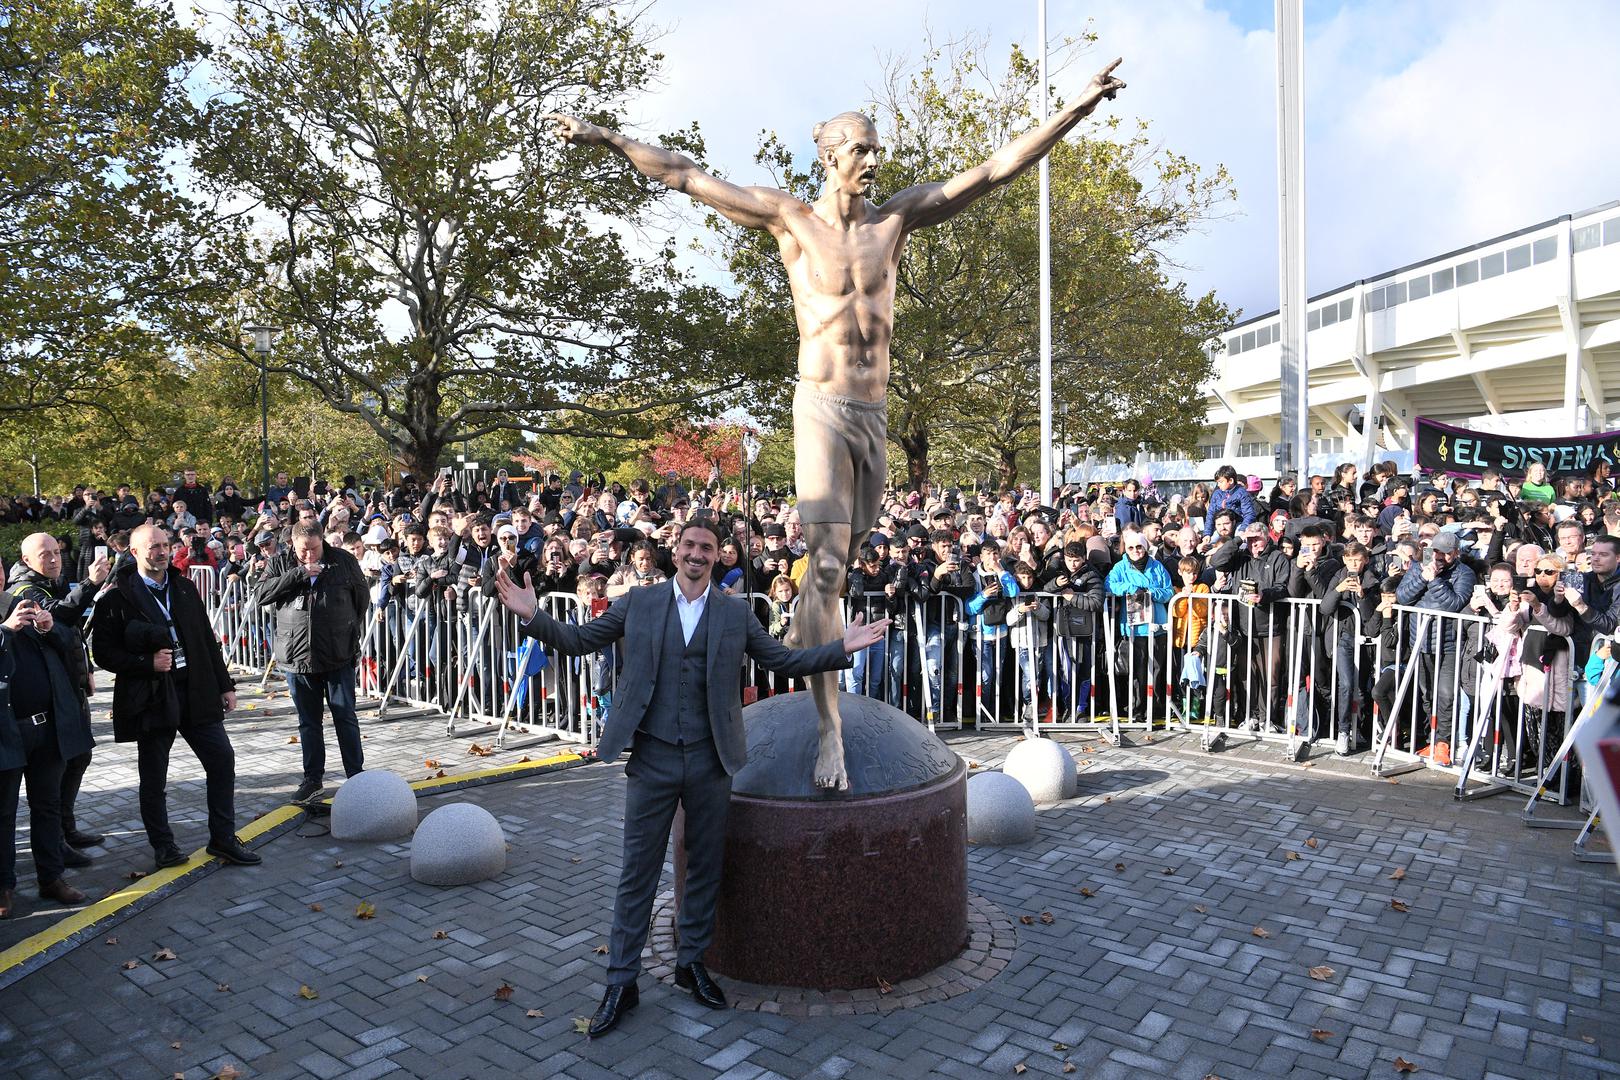 Kada dođete u New York, imate Kip slobode. Kada dođete u Švedsku, Kip Zlatana. Nevažno odakle ste došli, gdje živite, kako izgledate, ovaj kip je simbol da je sve moguće - kazao je Zlatan Ibrahimović